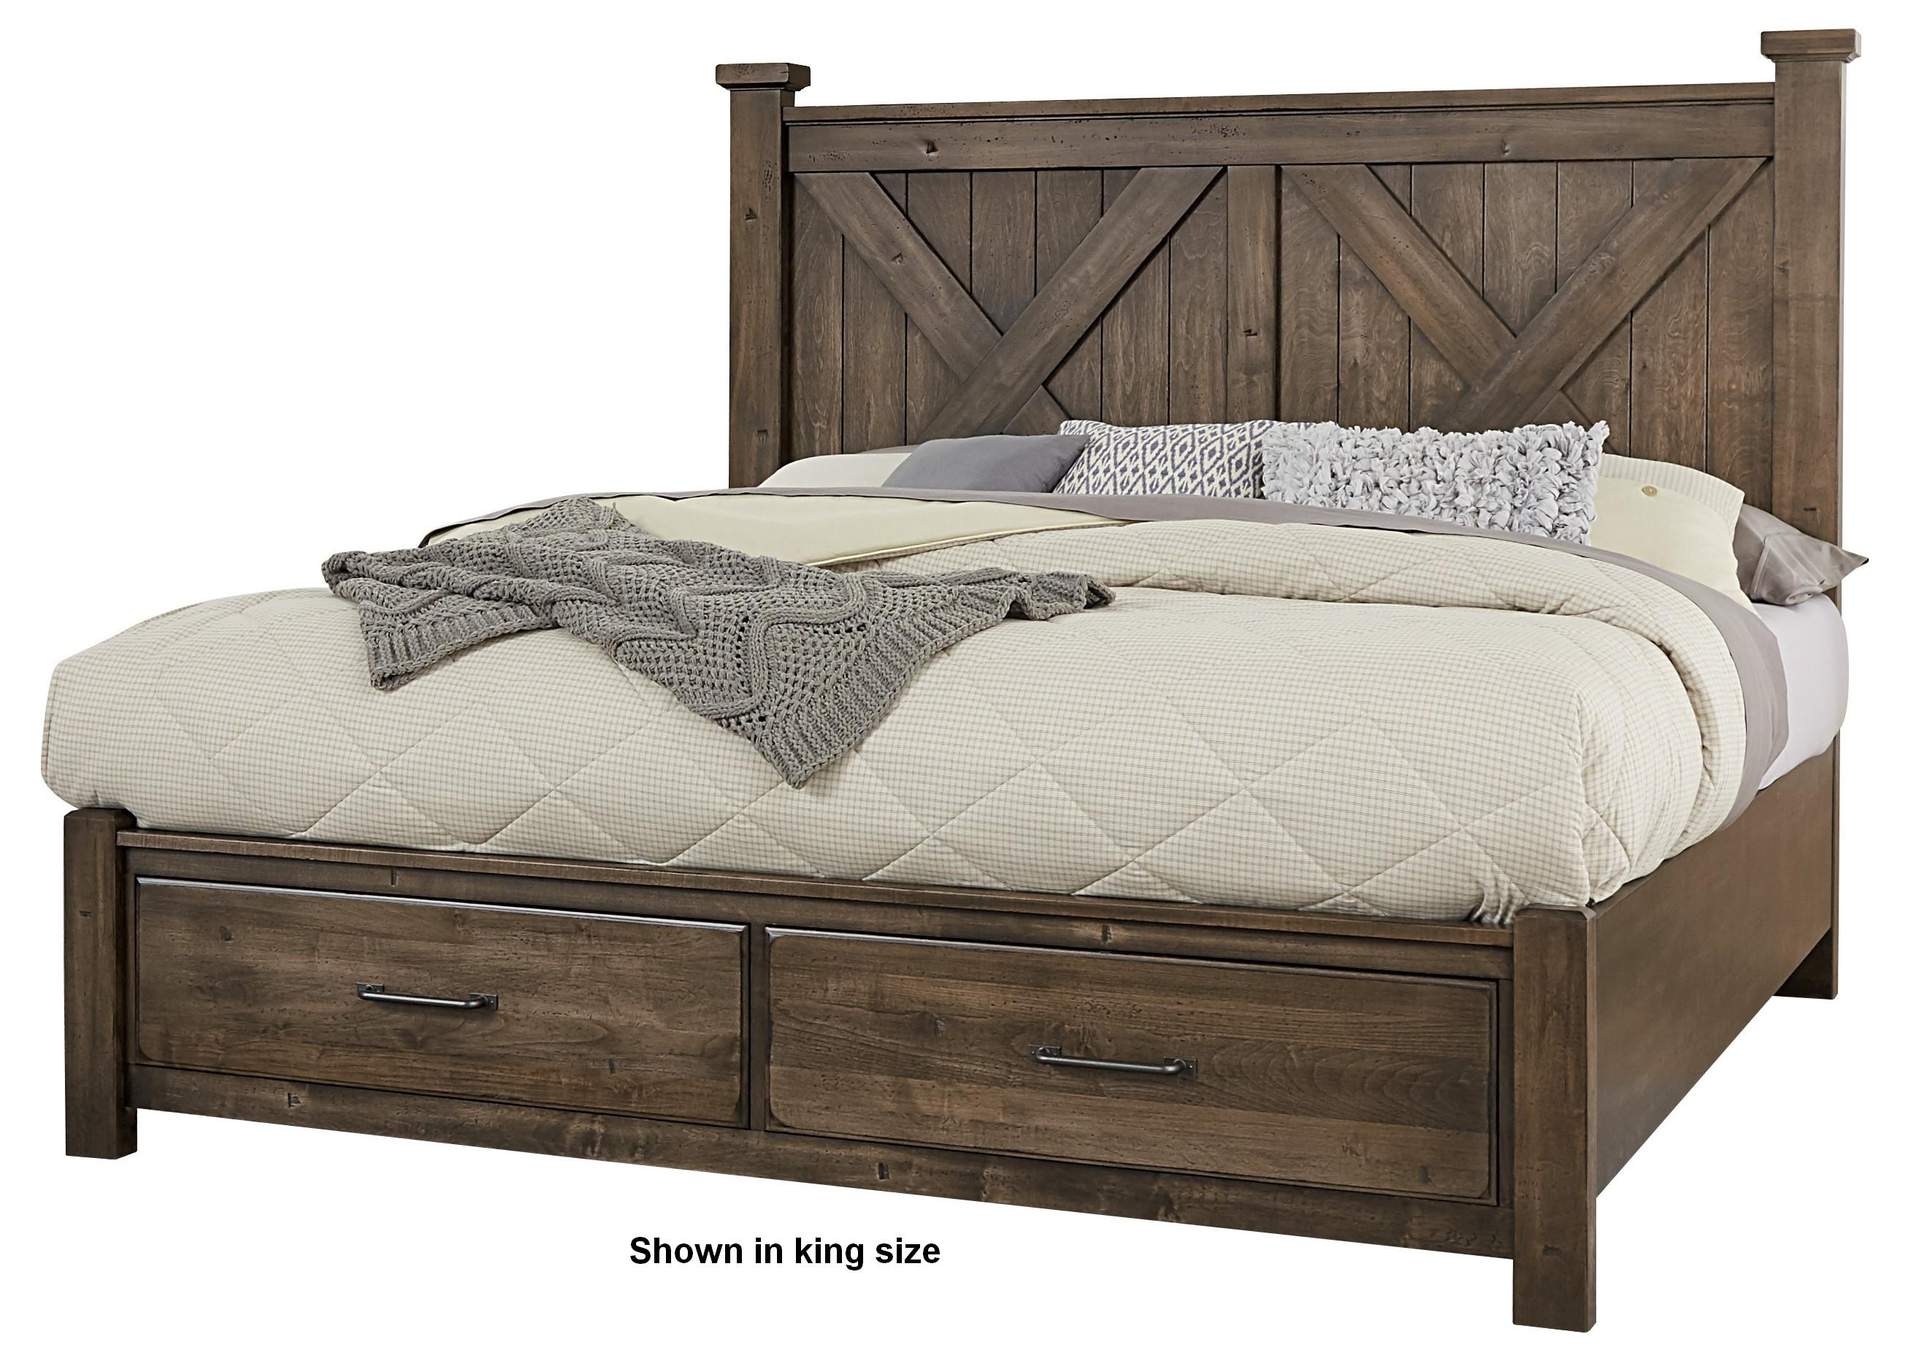 Cool Rustic Mink Queen X Bed w/ Footboard Storage,Vaughan-Bassett